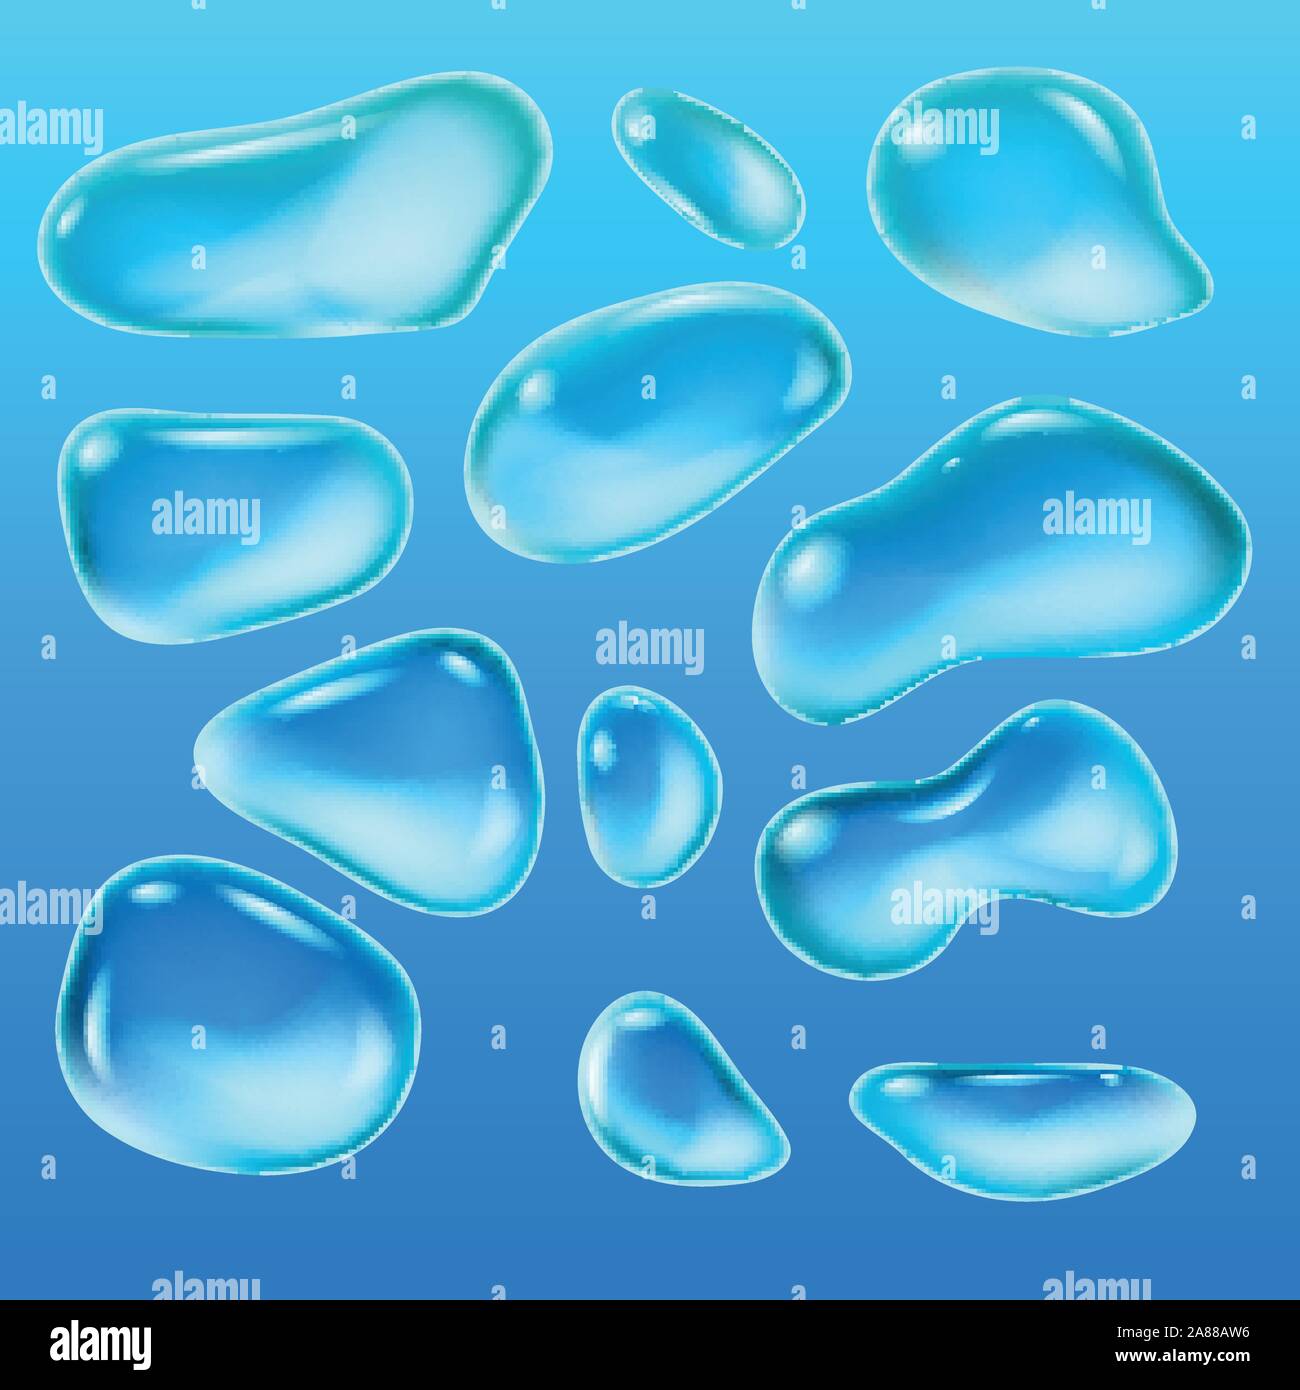 Realistische Tropfen Regen auf einem blauen Hintergrund in Form von Glas. Abstrakte eingestellt. Vector Illustration. Stock Vektor